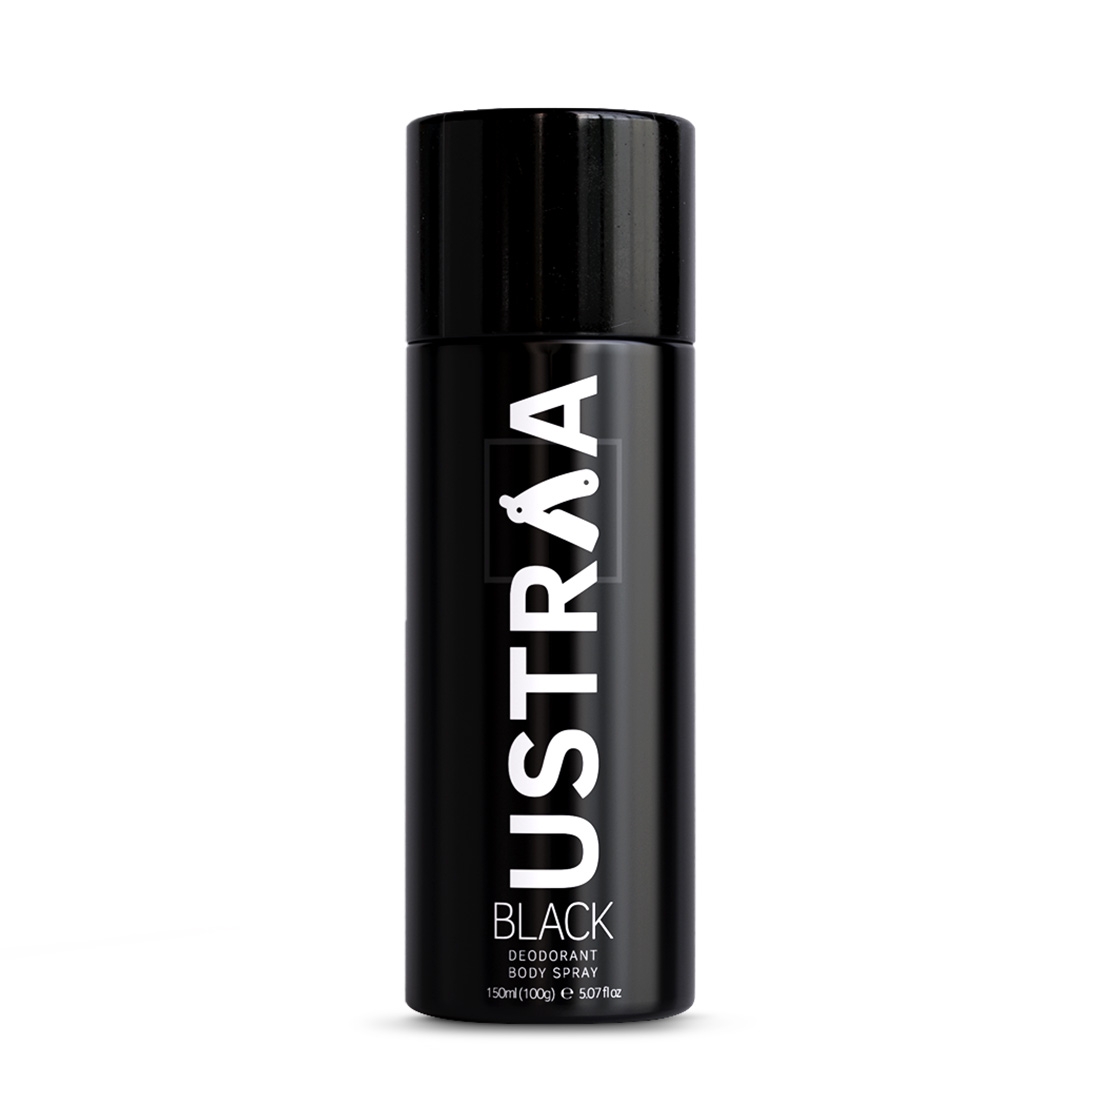 Ustraa | Ustraa Anti Acne Spot Gel - 15ml & BLACK Deodorant Body Spray - 150ml 4